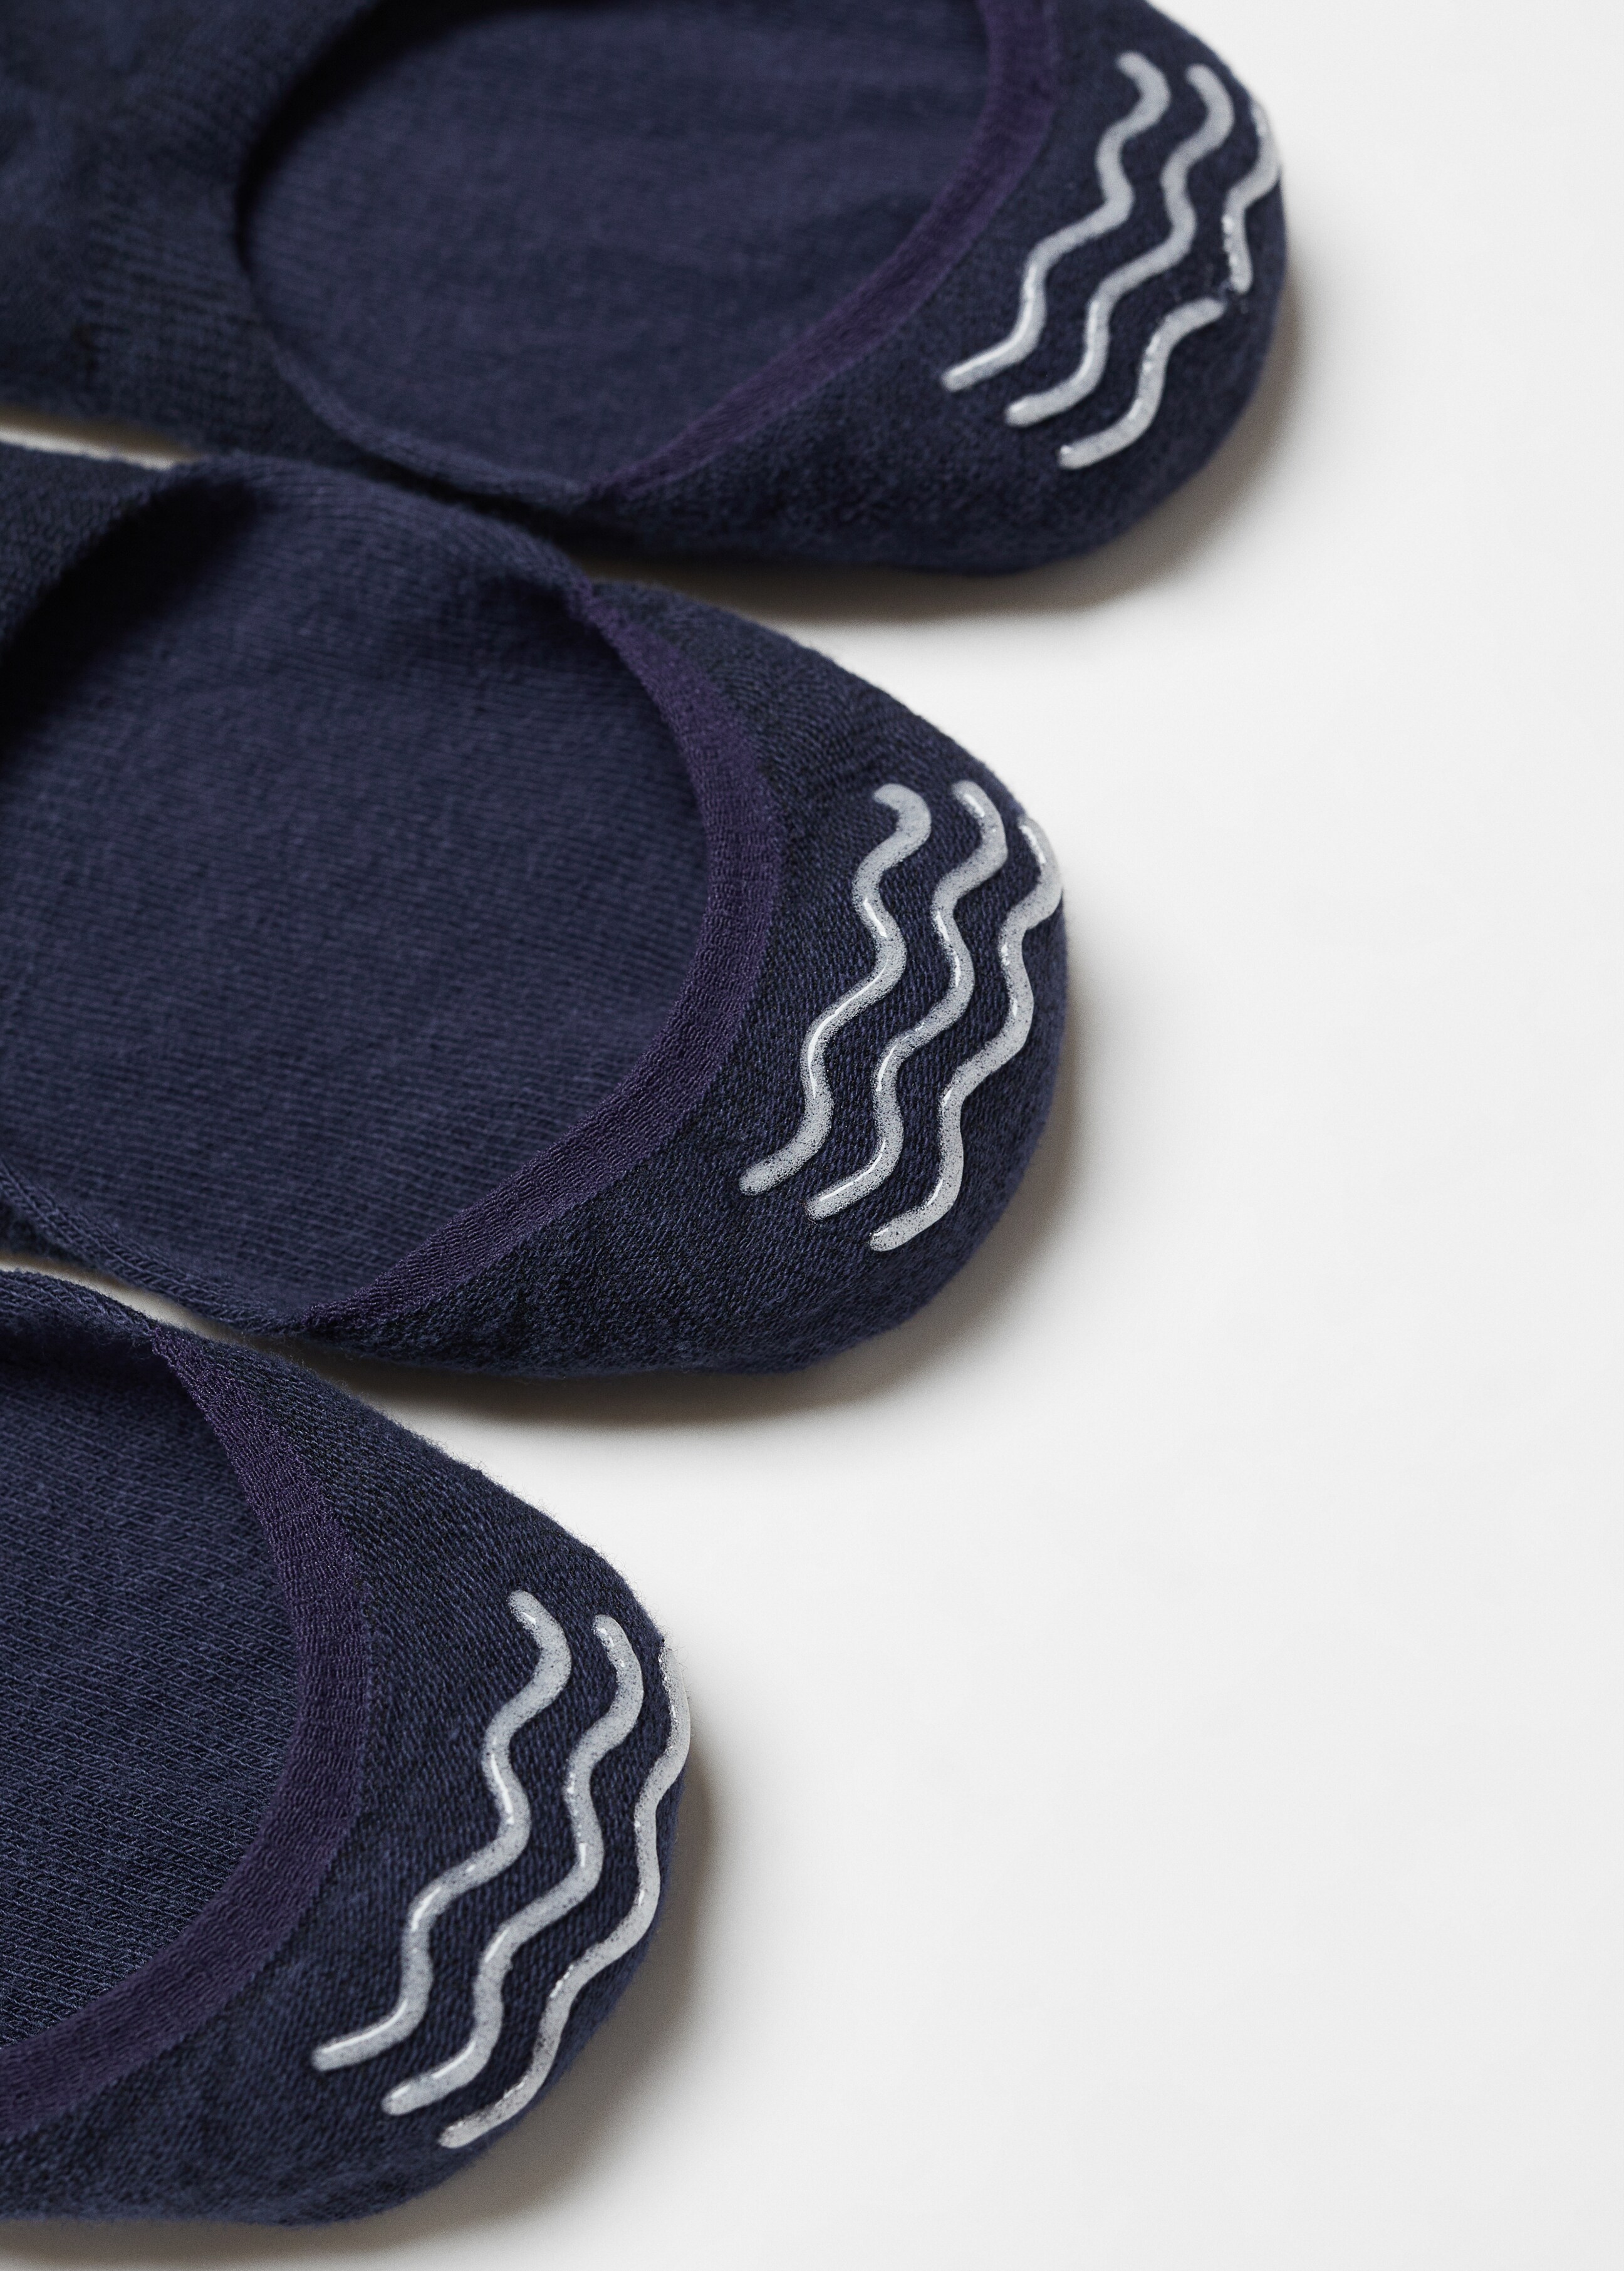 Souprava 3 párů neviditelných ponožek - A termék adatai 8